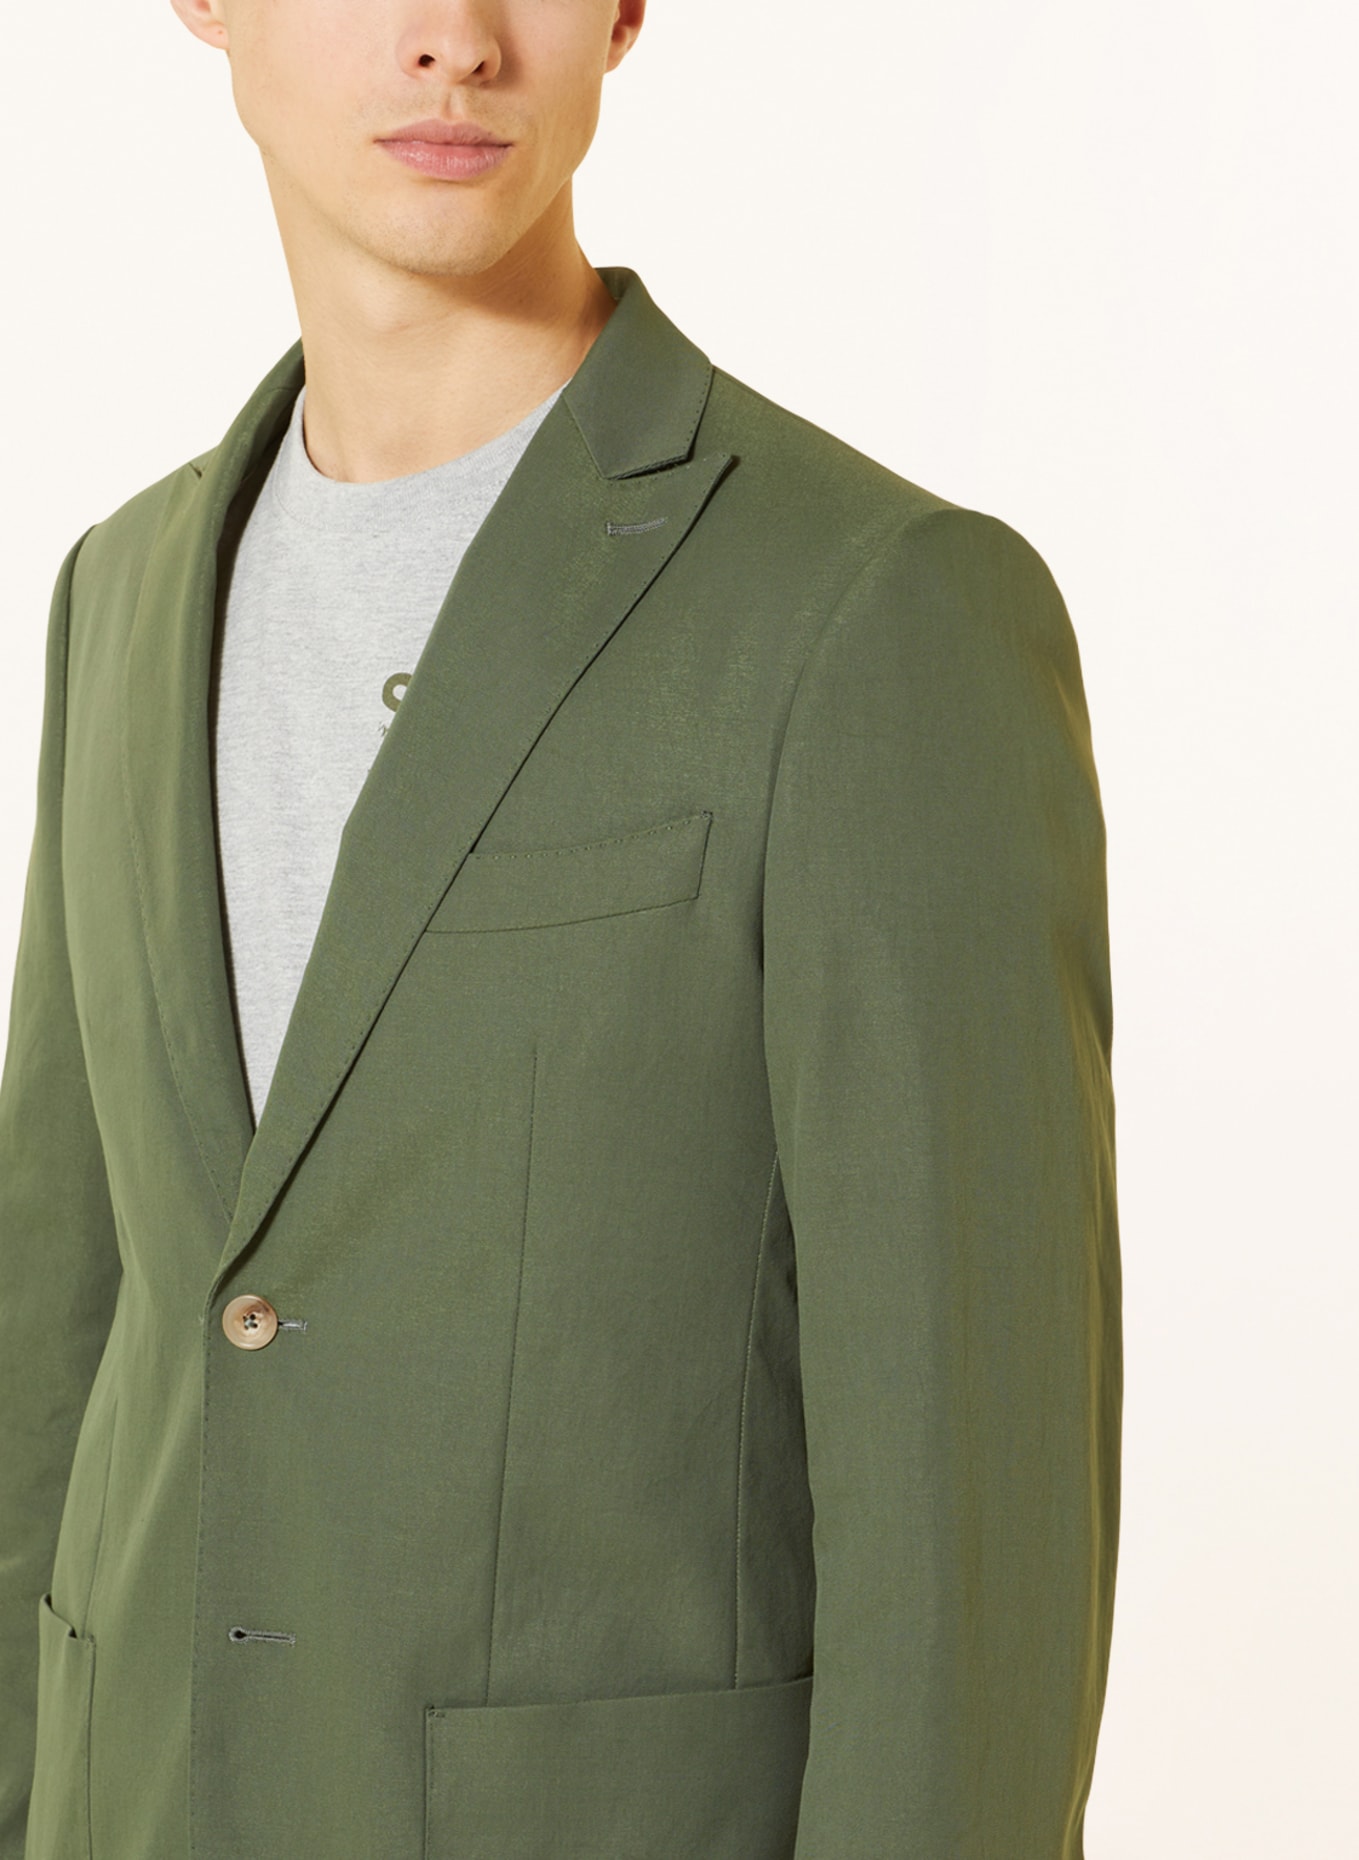 SPSR Suit jacket extra slim fit, Color: GREEN (Image 5)